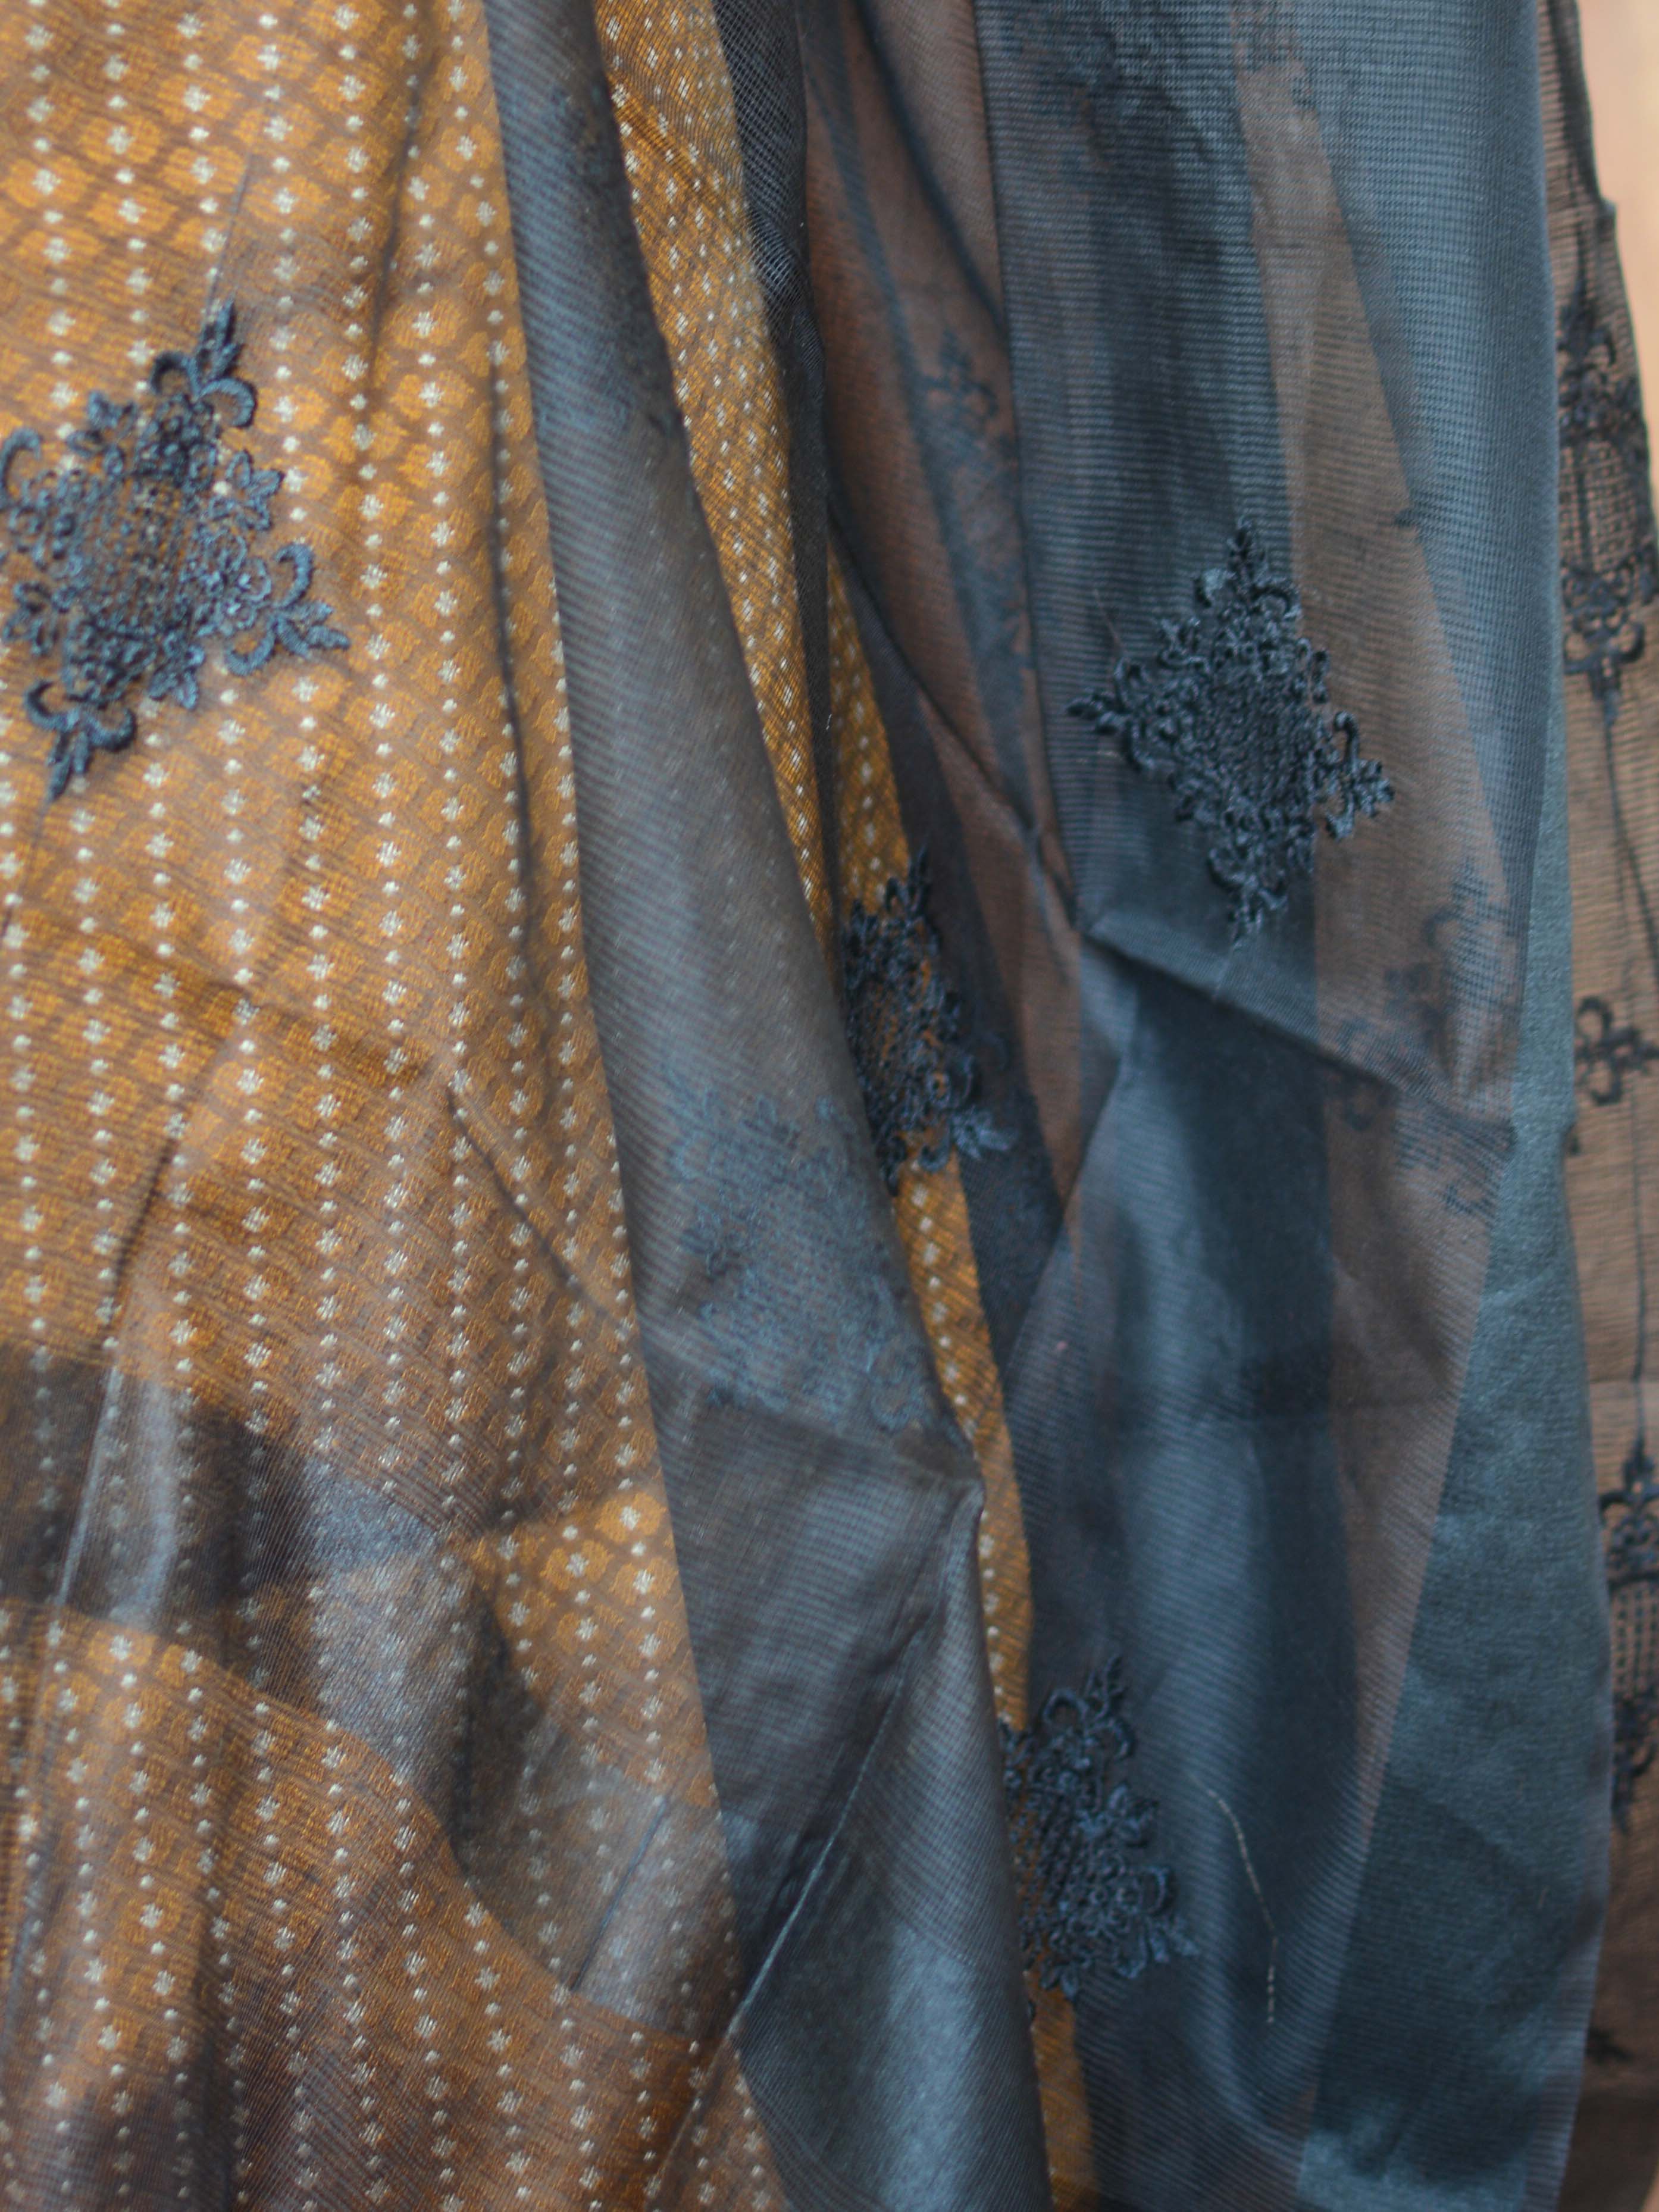 Banarasee Brocade Salwar Kameez Fabric With Organza Dupatta-Black & Mustard Yellow